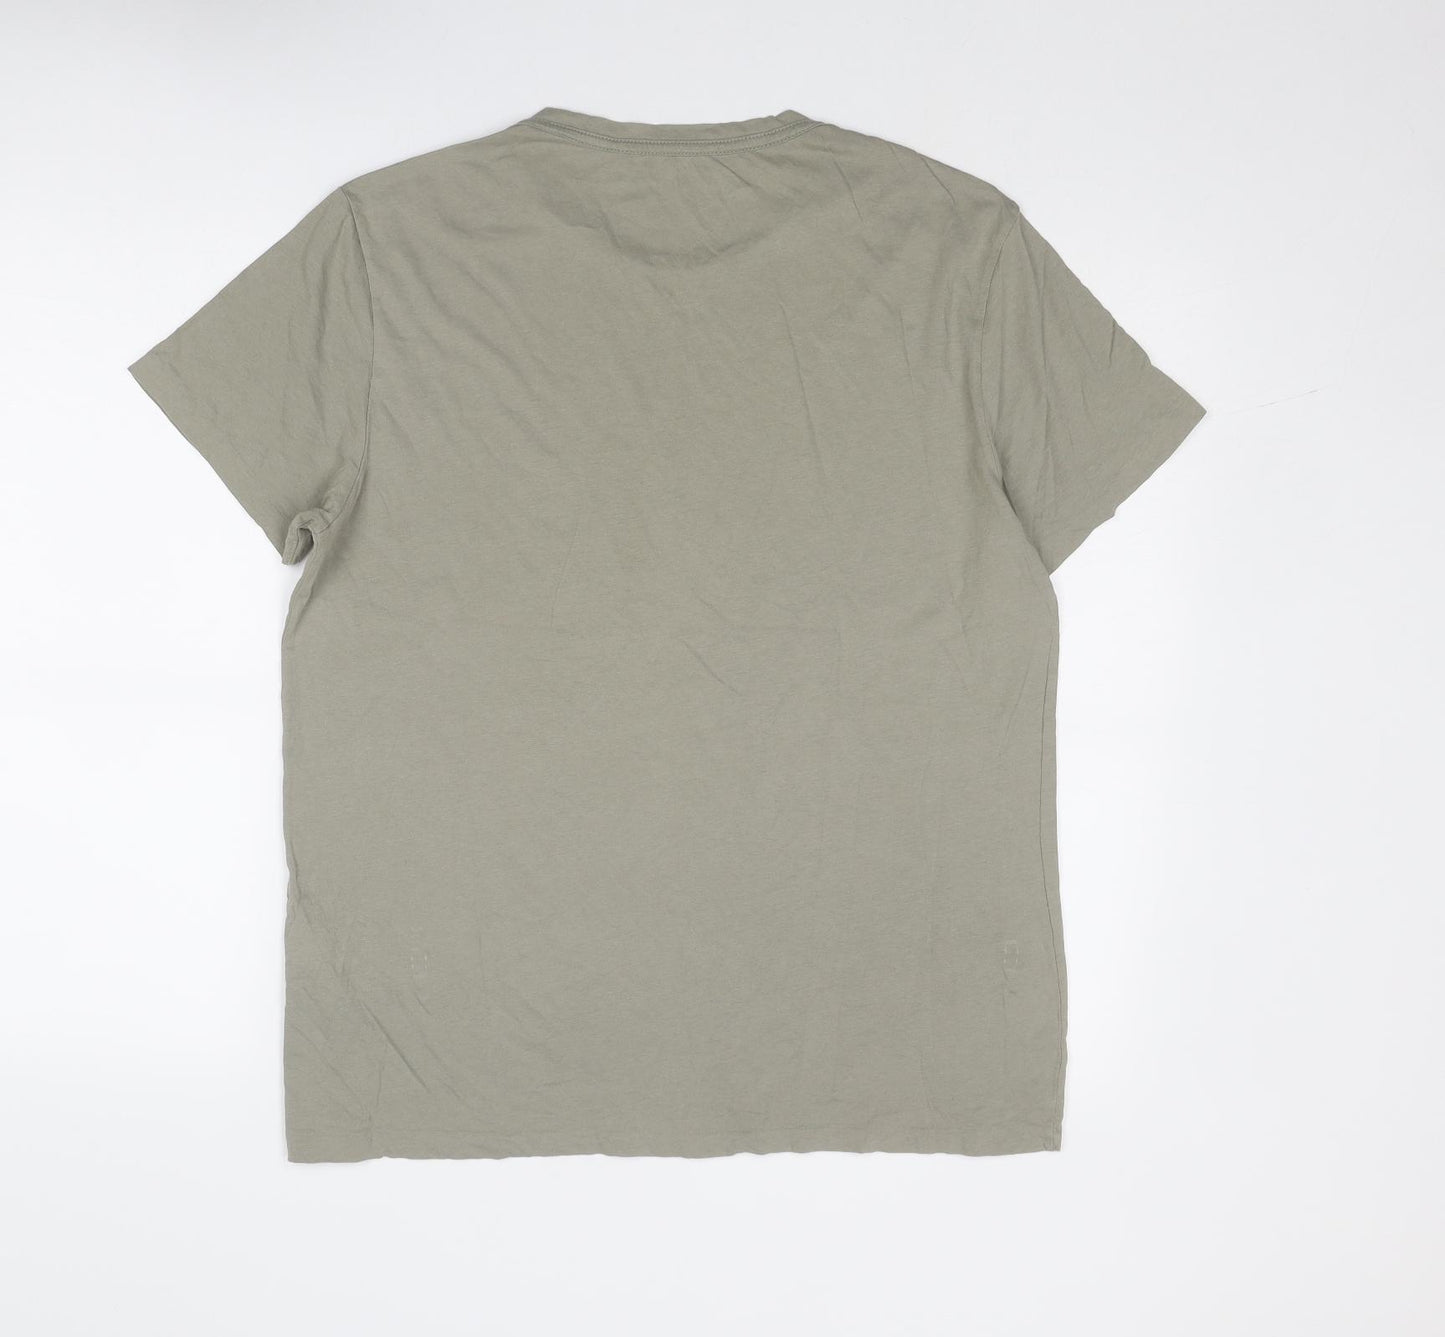 AllSaints Mens Green Cotton T-Shirt Size M Round Neck